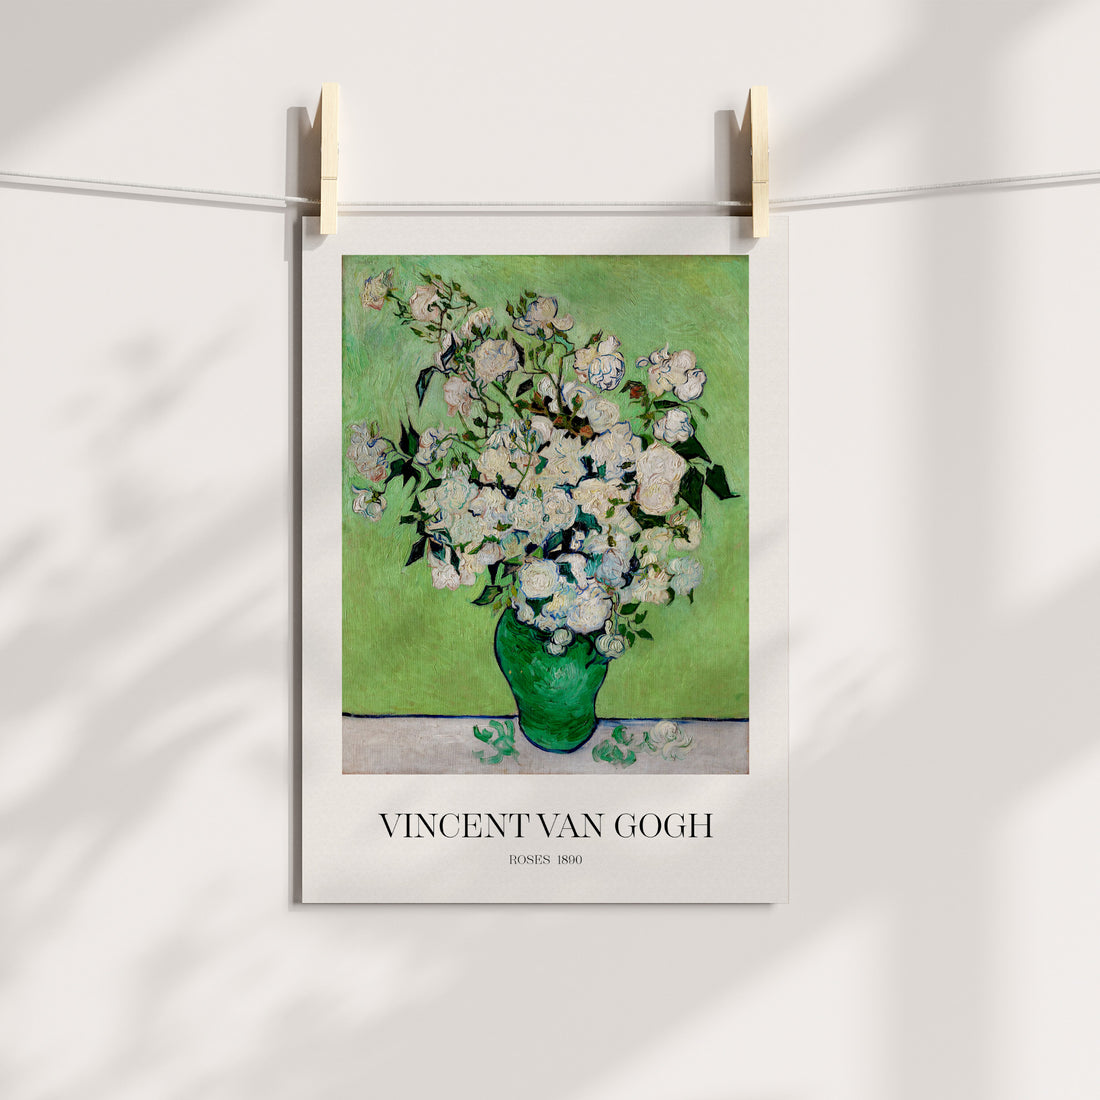 Van Gogh Roses print-at-home art